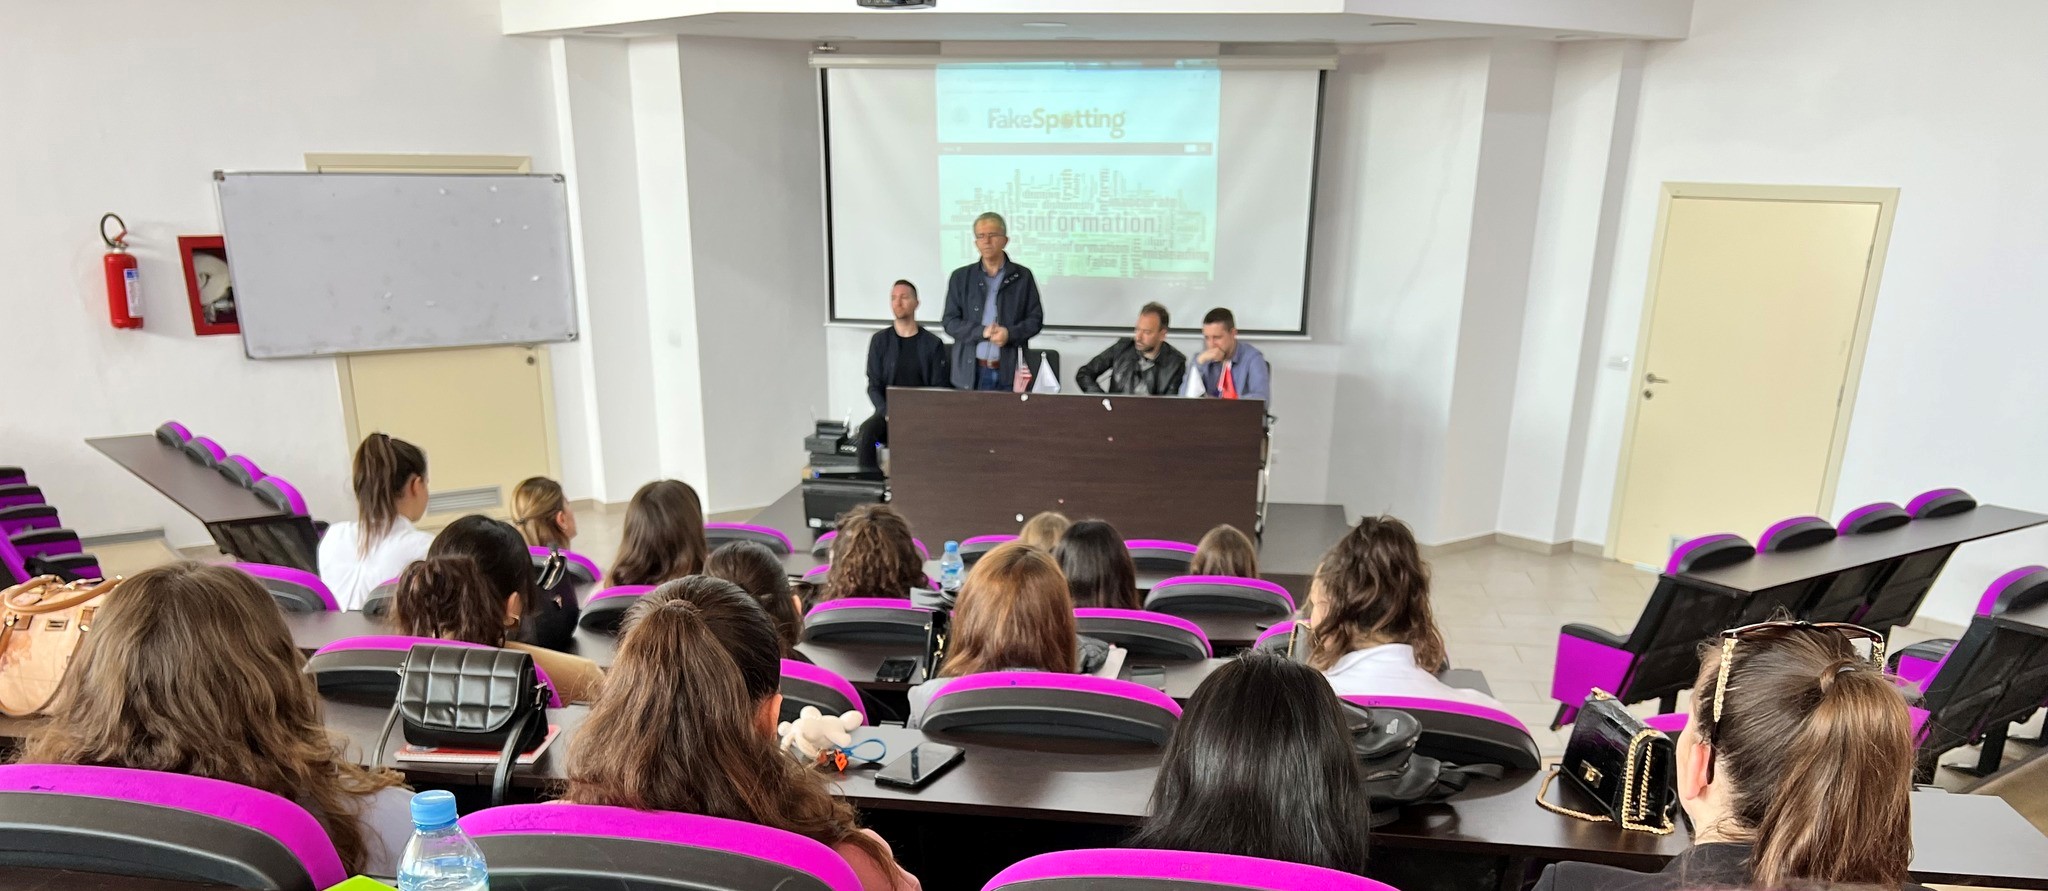 Pedagogë të Departamentit të Gazetarisë dhe Komunikimit, takim me pedagogë dhe studentë të Universitetit “Aleksandër Moisiu” për luftën kundër lajmeve të rreme dhe dezinformimit